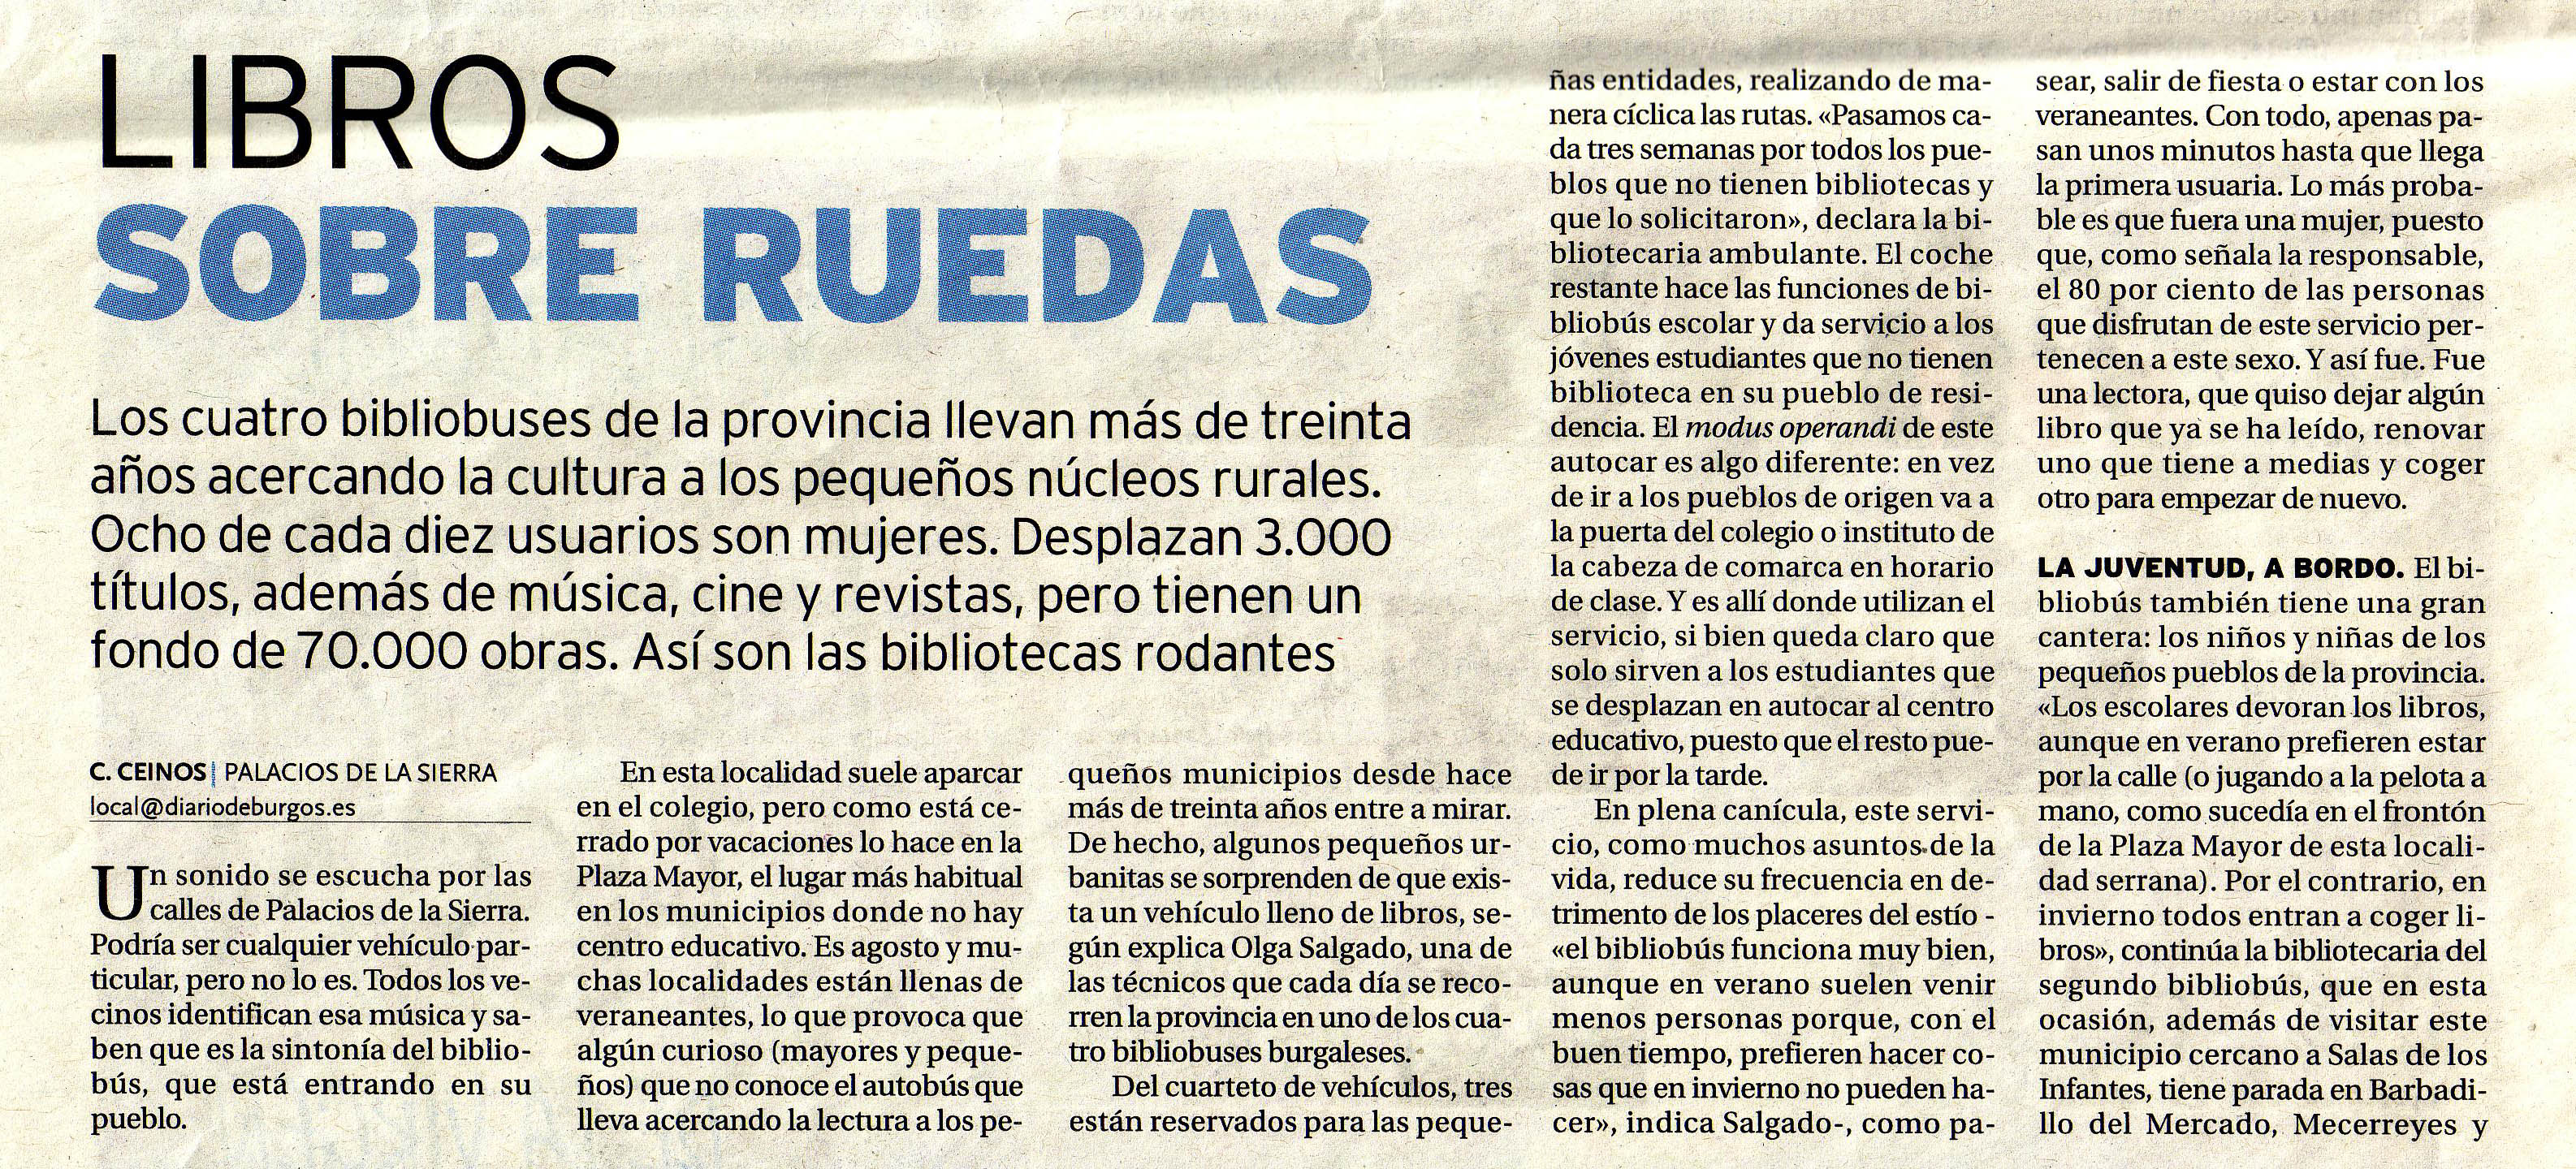 Libros sobre ruedas, Diario de Burgos 4-09-2016, a